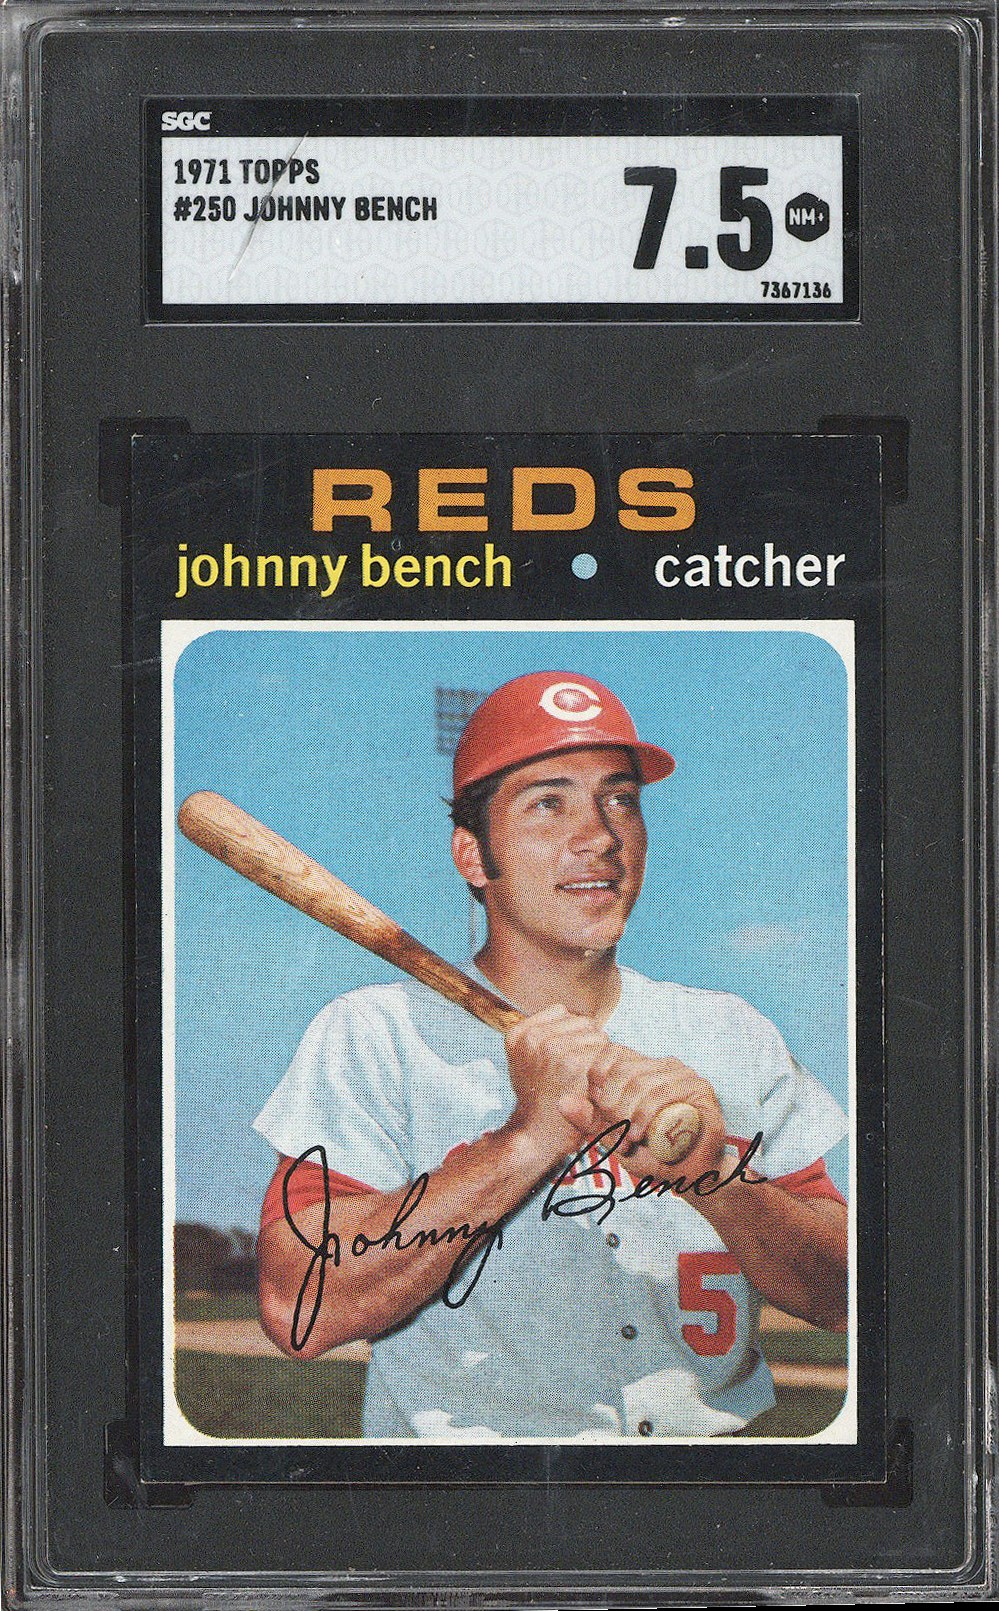 1971 Topps #250 Johnny Bench (HOF) - SGC NM+ 7.5